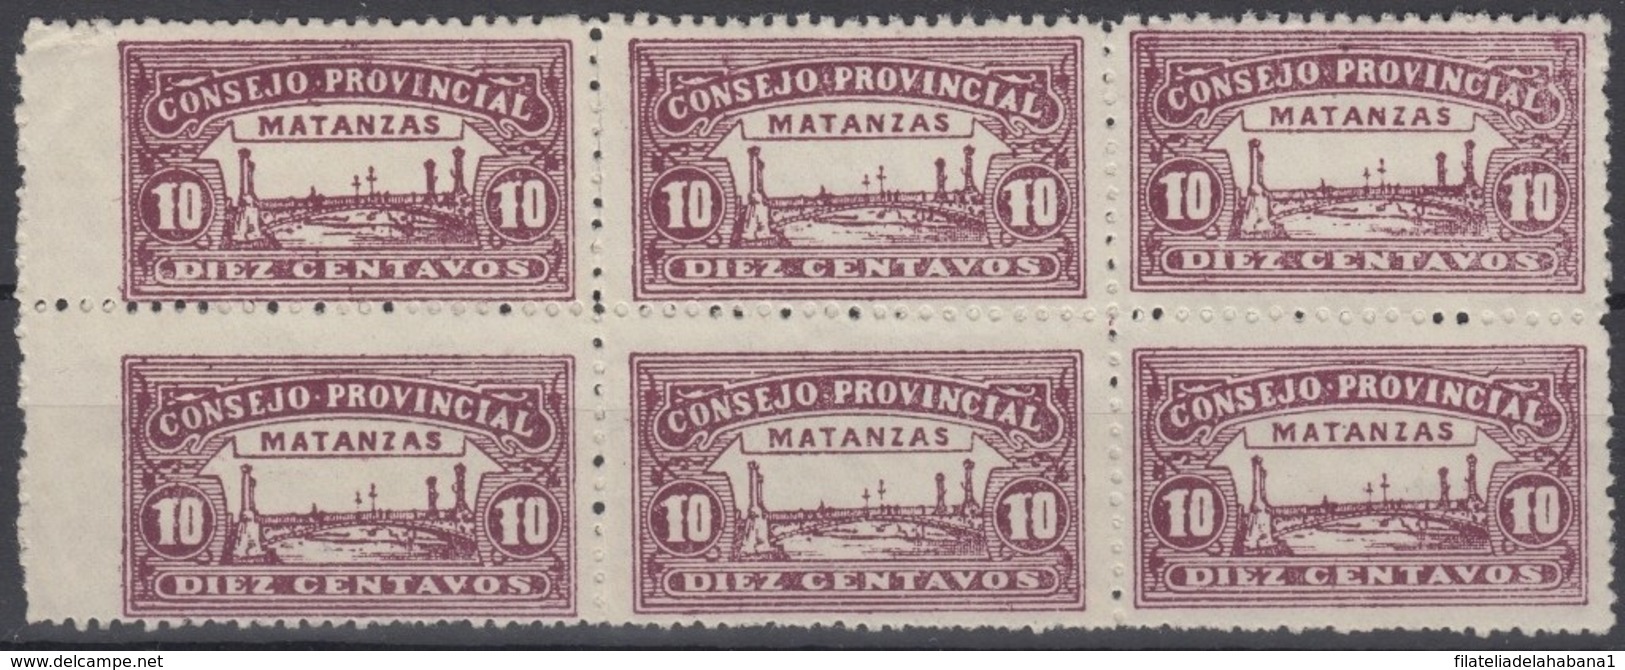 LOC-89 CUBA REPUBLICA. 1903. LOCAL REVENUE MATANZAS. 10c PERFORATED BLOCK 6. NO GUM. - Portomarken